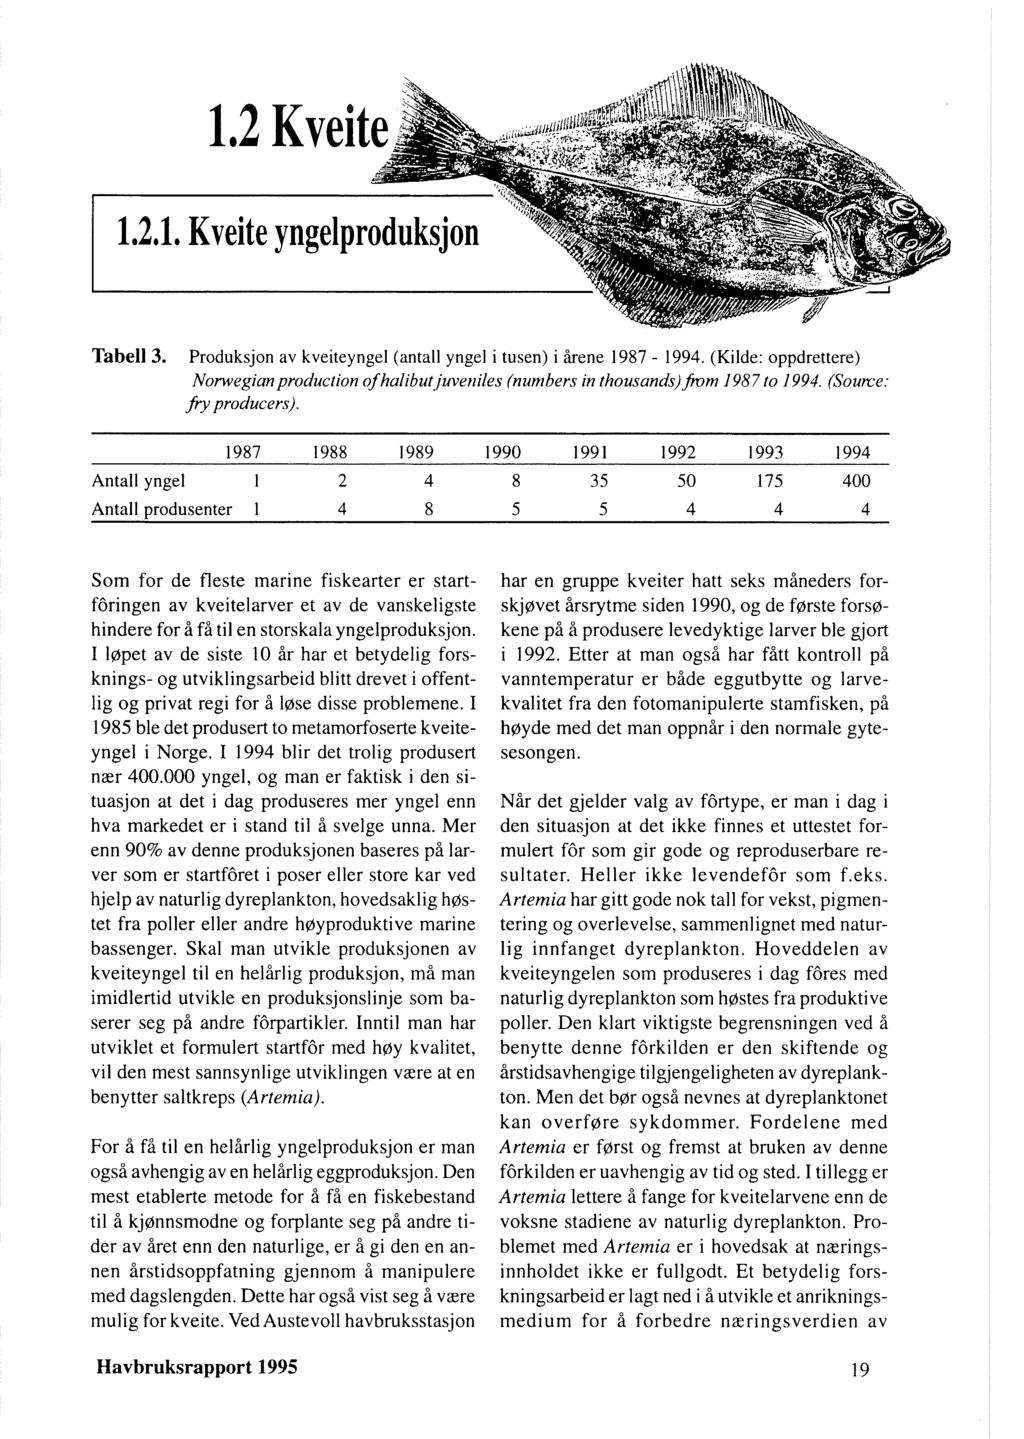 Tabell 3. Produksjon av kveiteyngel (antall yngel i tusen) i årene 1987-1994. (Kilde: oppdrettere) Norwegian production of halibutjuveniles (numbers in thousands)hm 1987 to 1994. (Source. j?